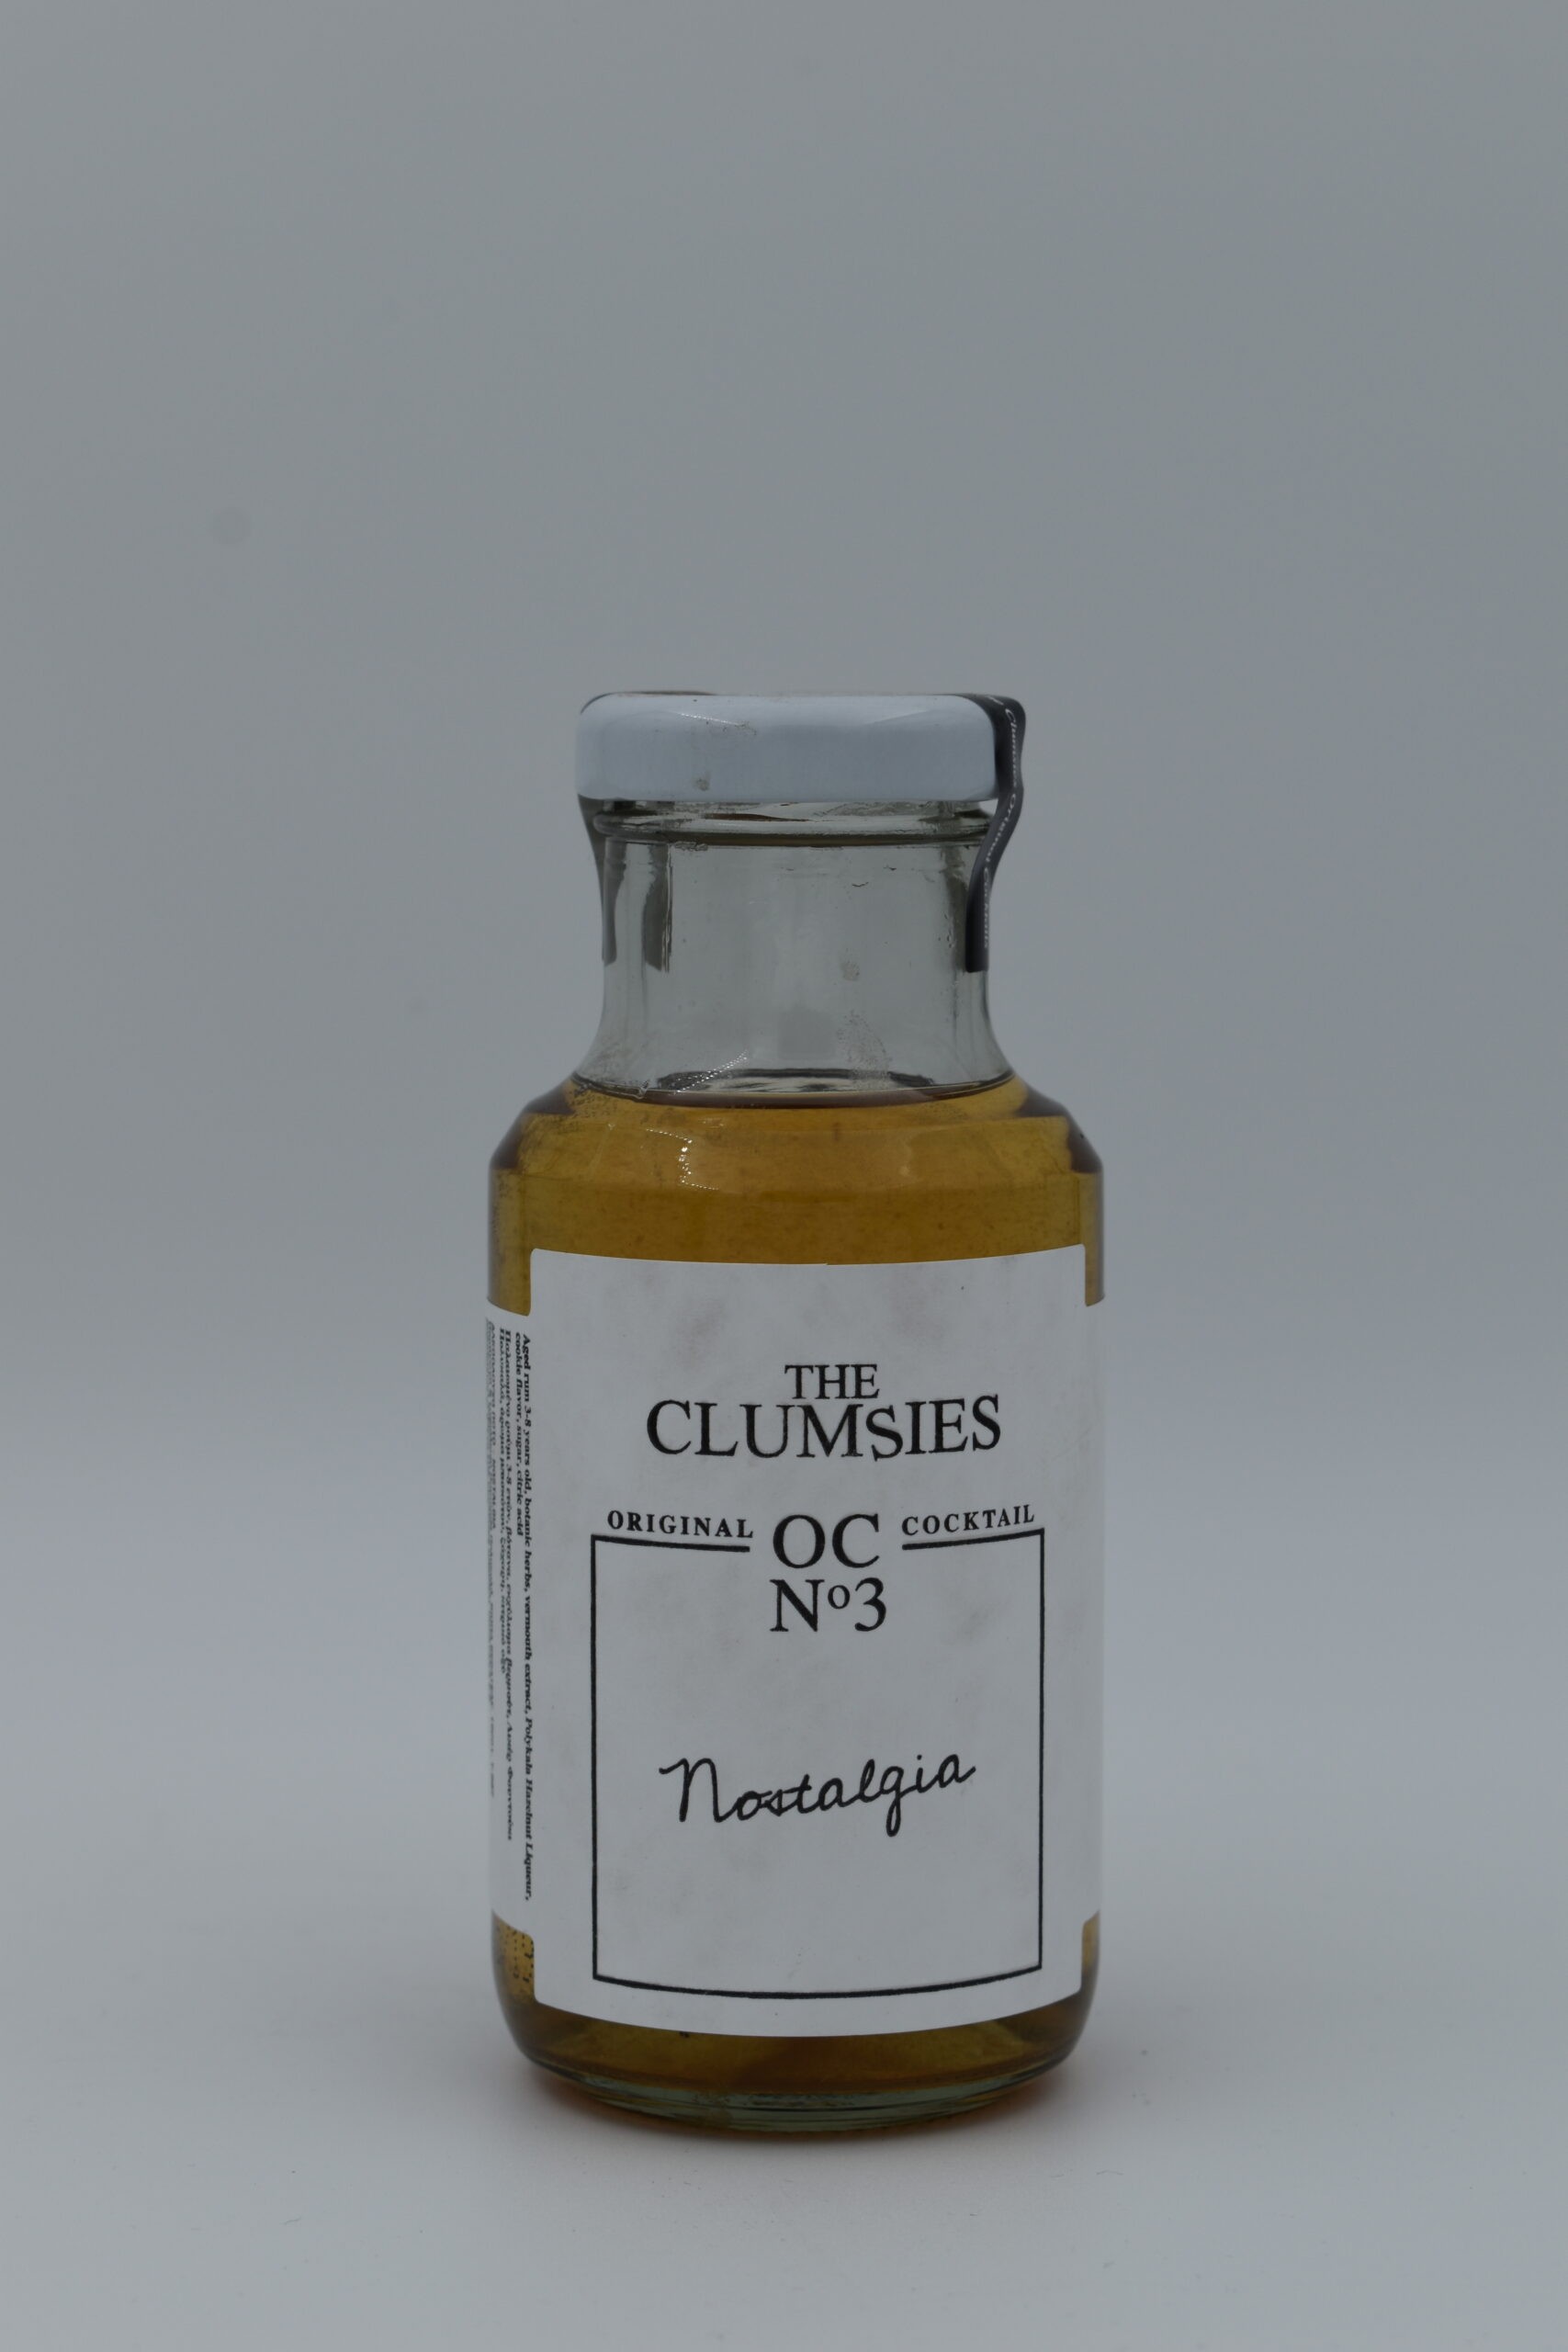 THE CLUMSIES No 3 NOSTALGIA 27% 200 ml